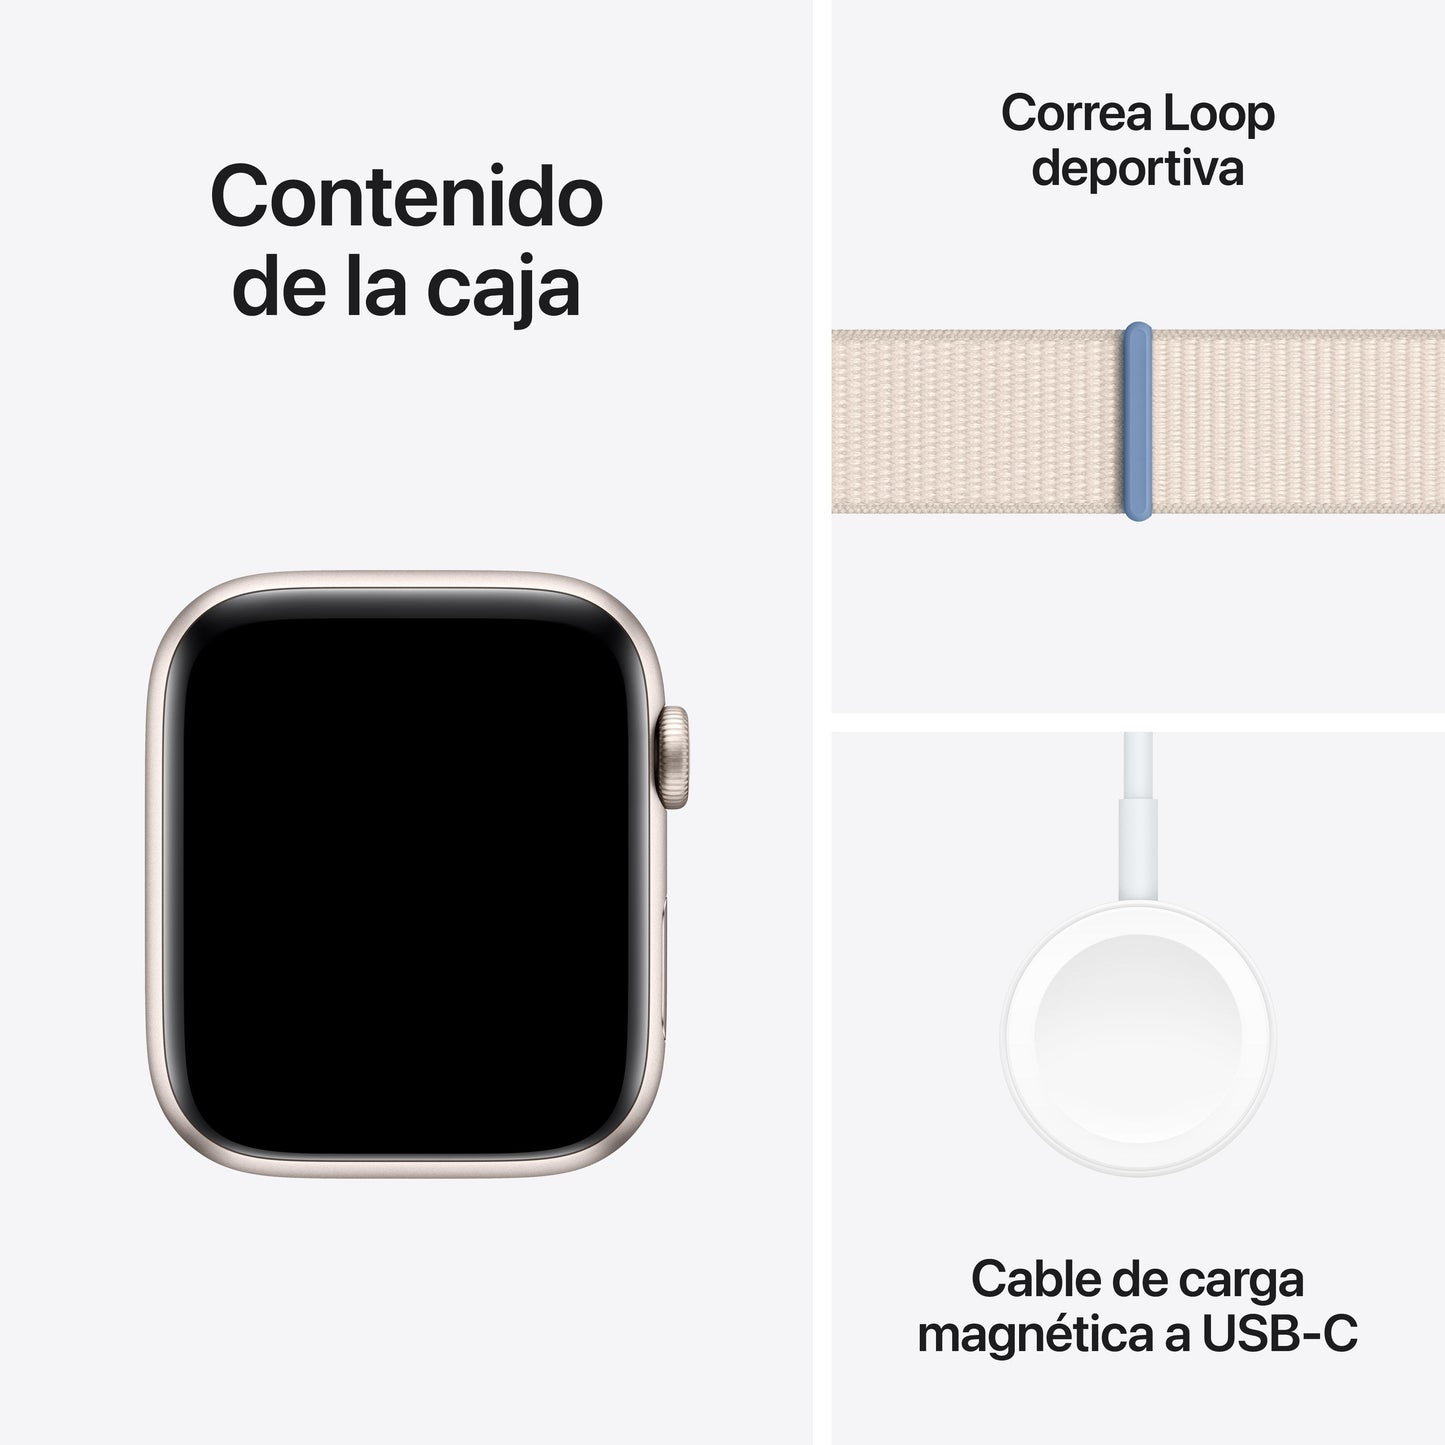 Apple Watch SE (GPS + Cellular) - Caja de aluminio en blanco estrella de 44 mm - Correa Loop deportiva blanco estrella